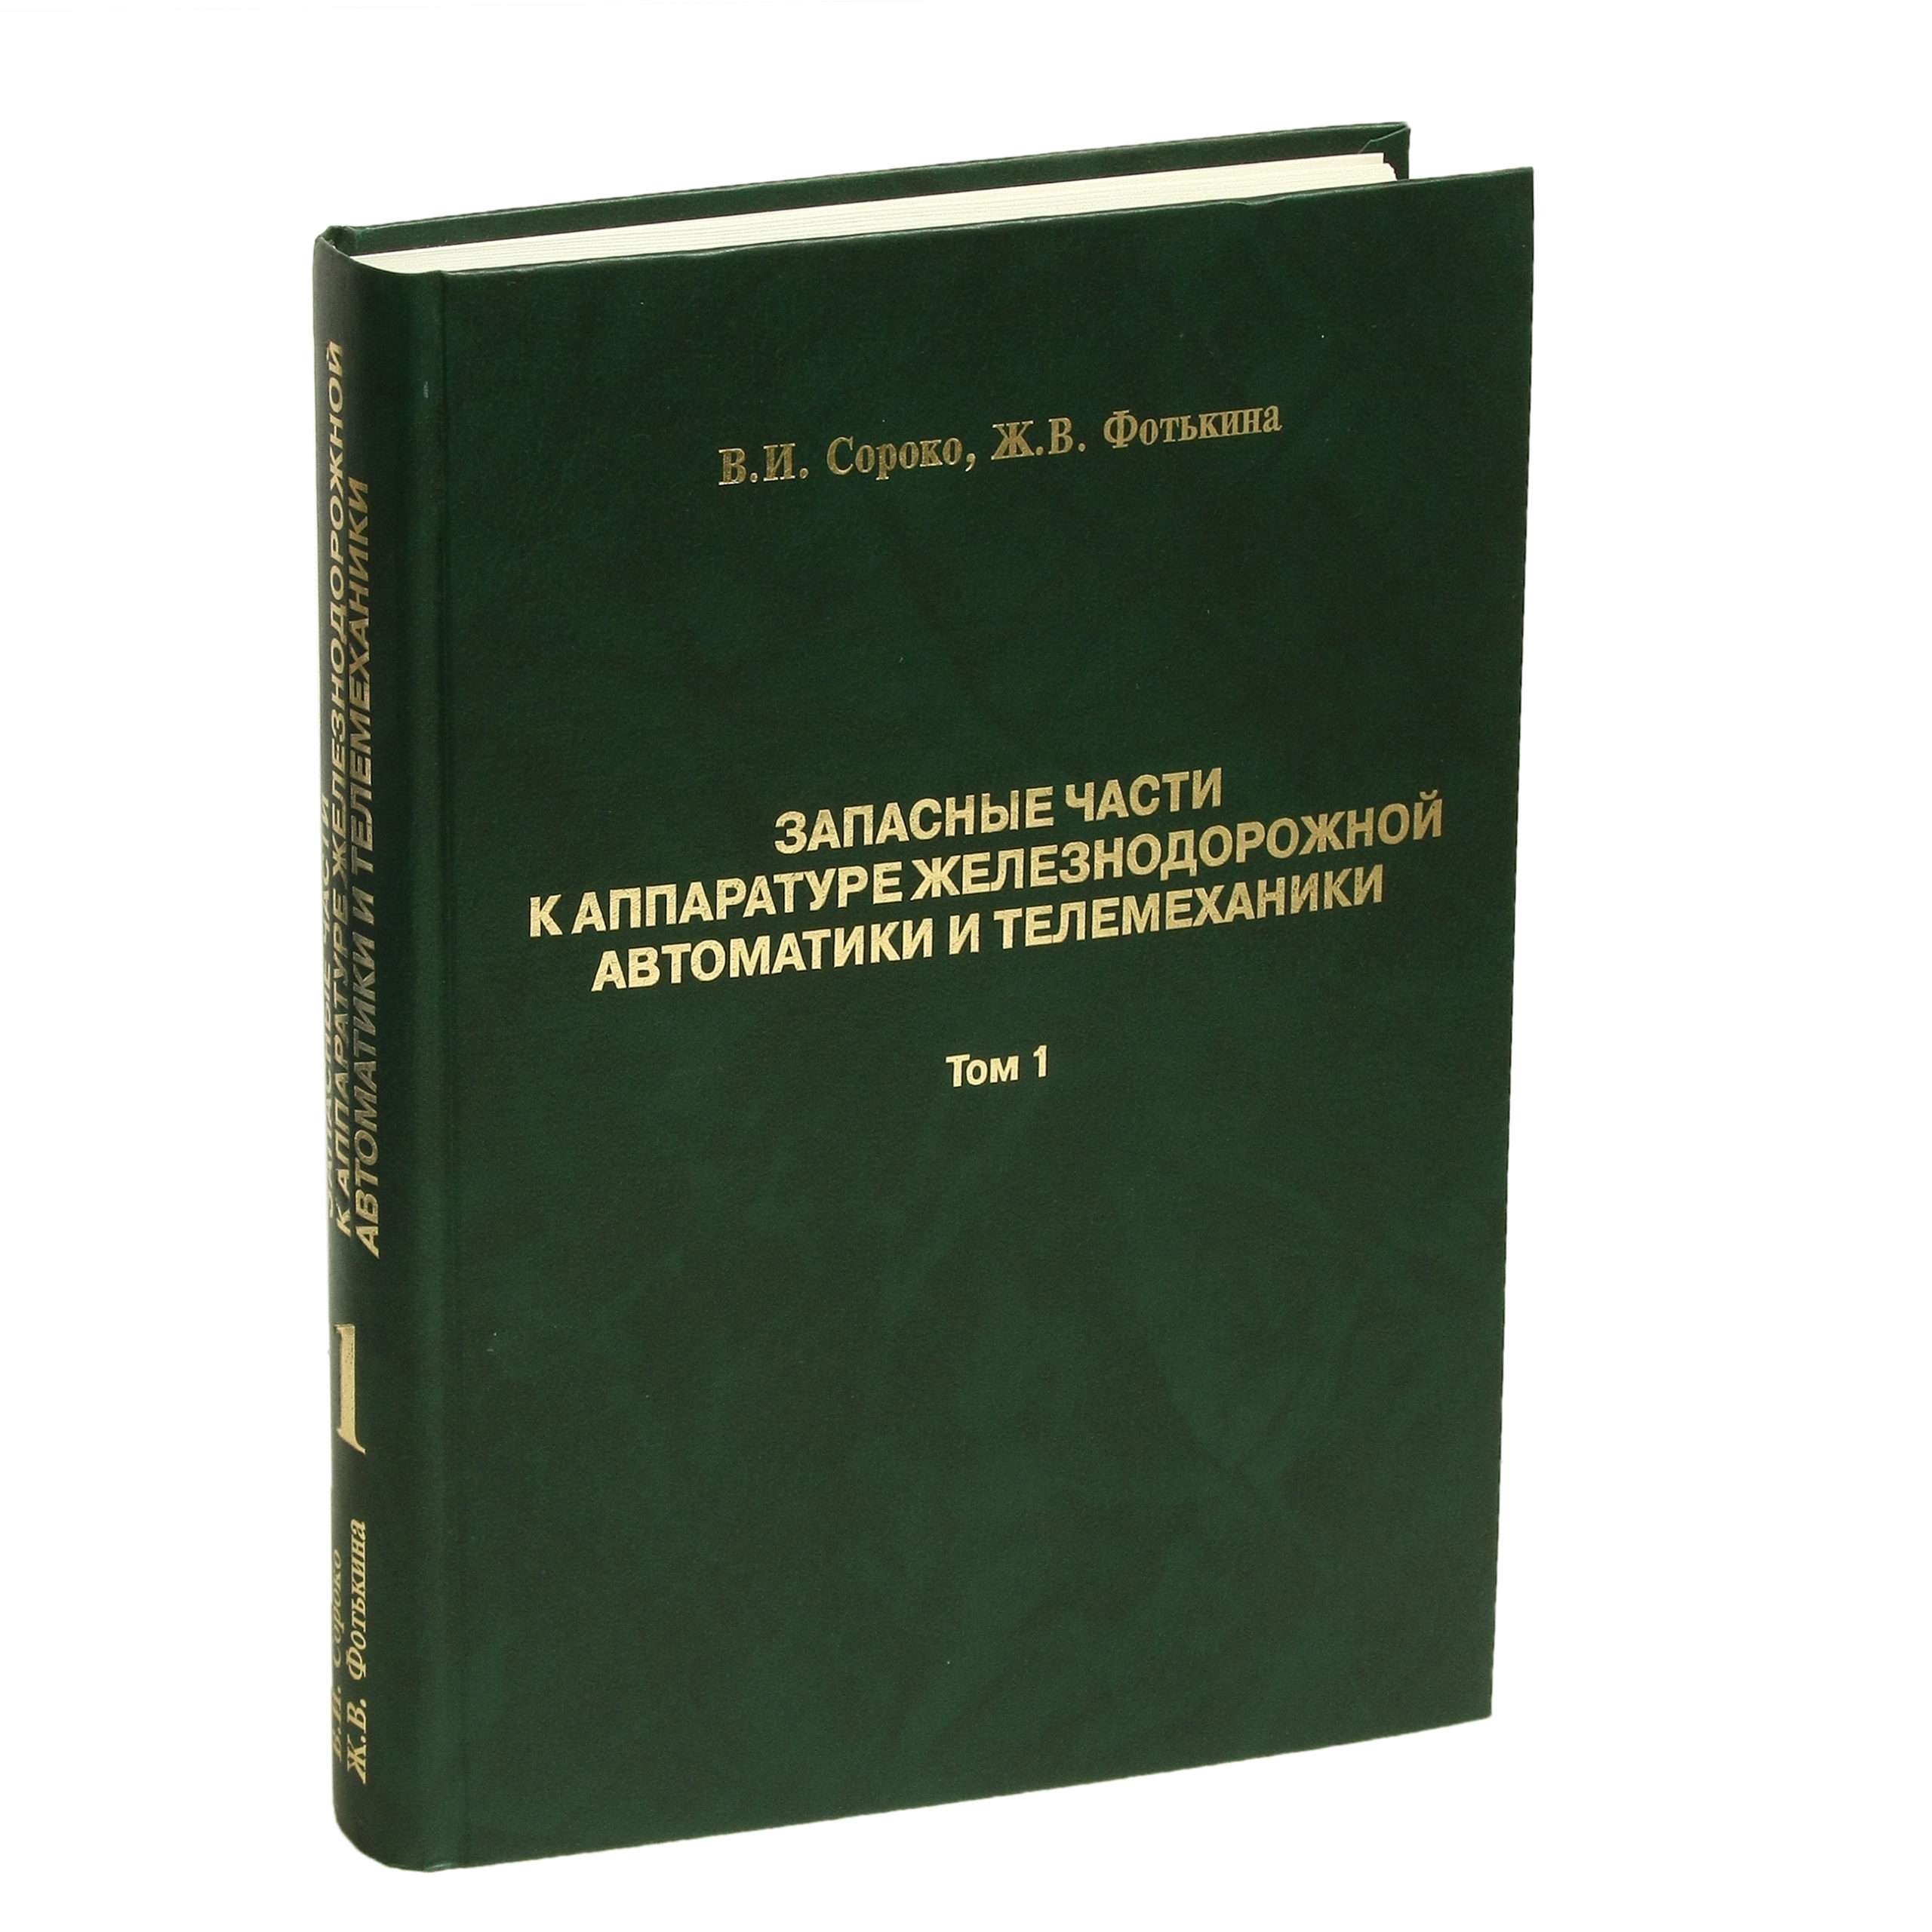 Запасные части к аппаратуре железнодорожной автоматики и телемеханики: Справочник в 2-х томах